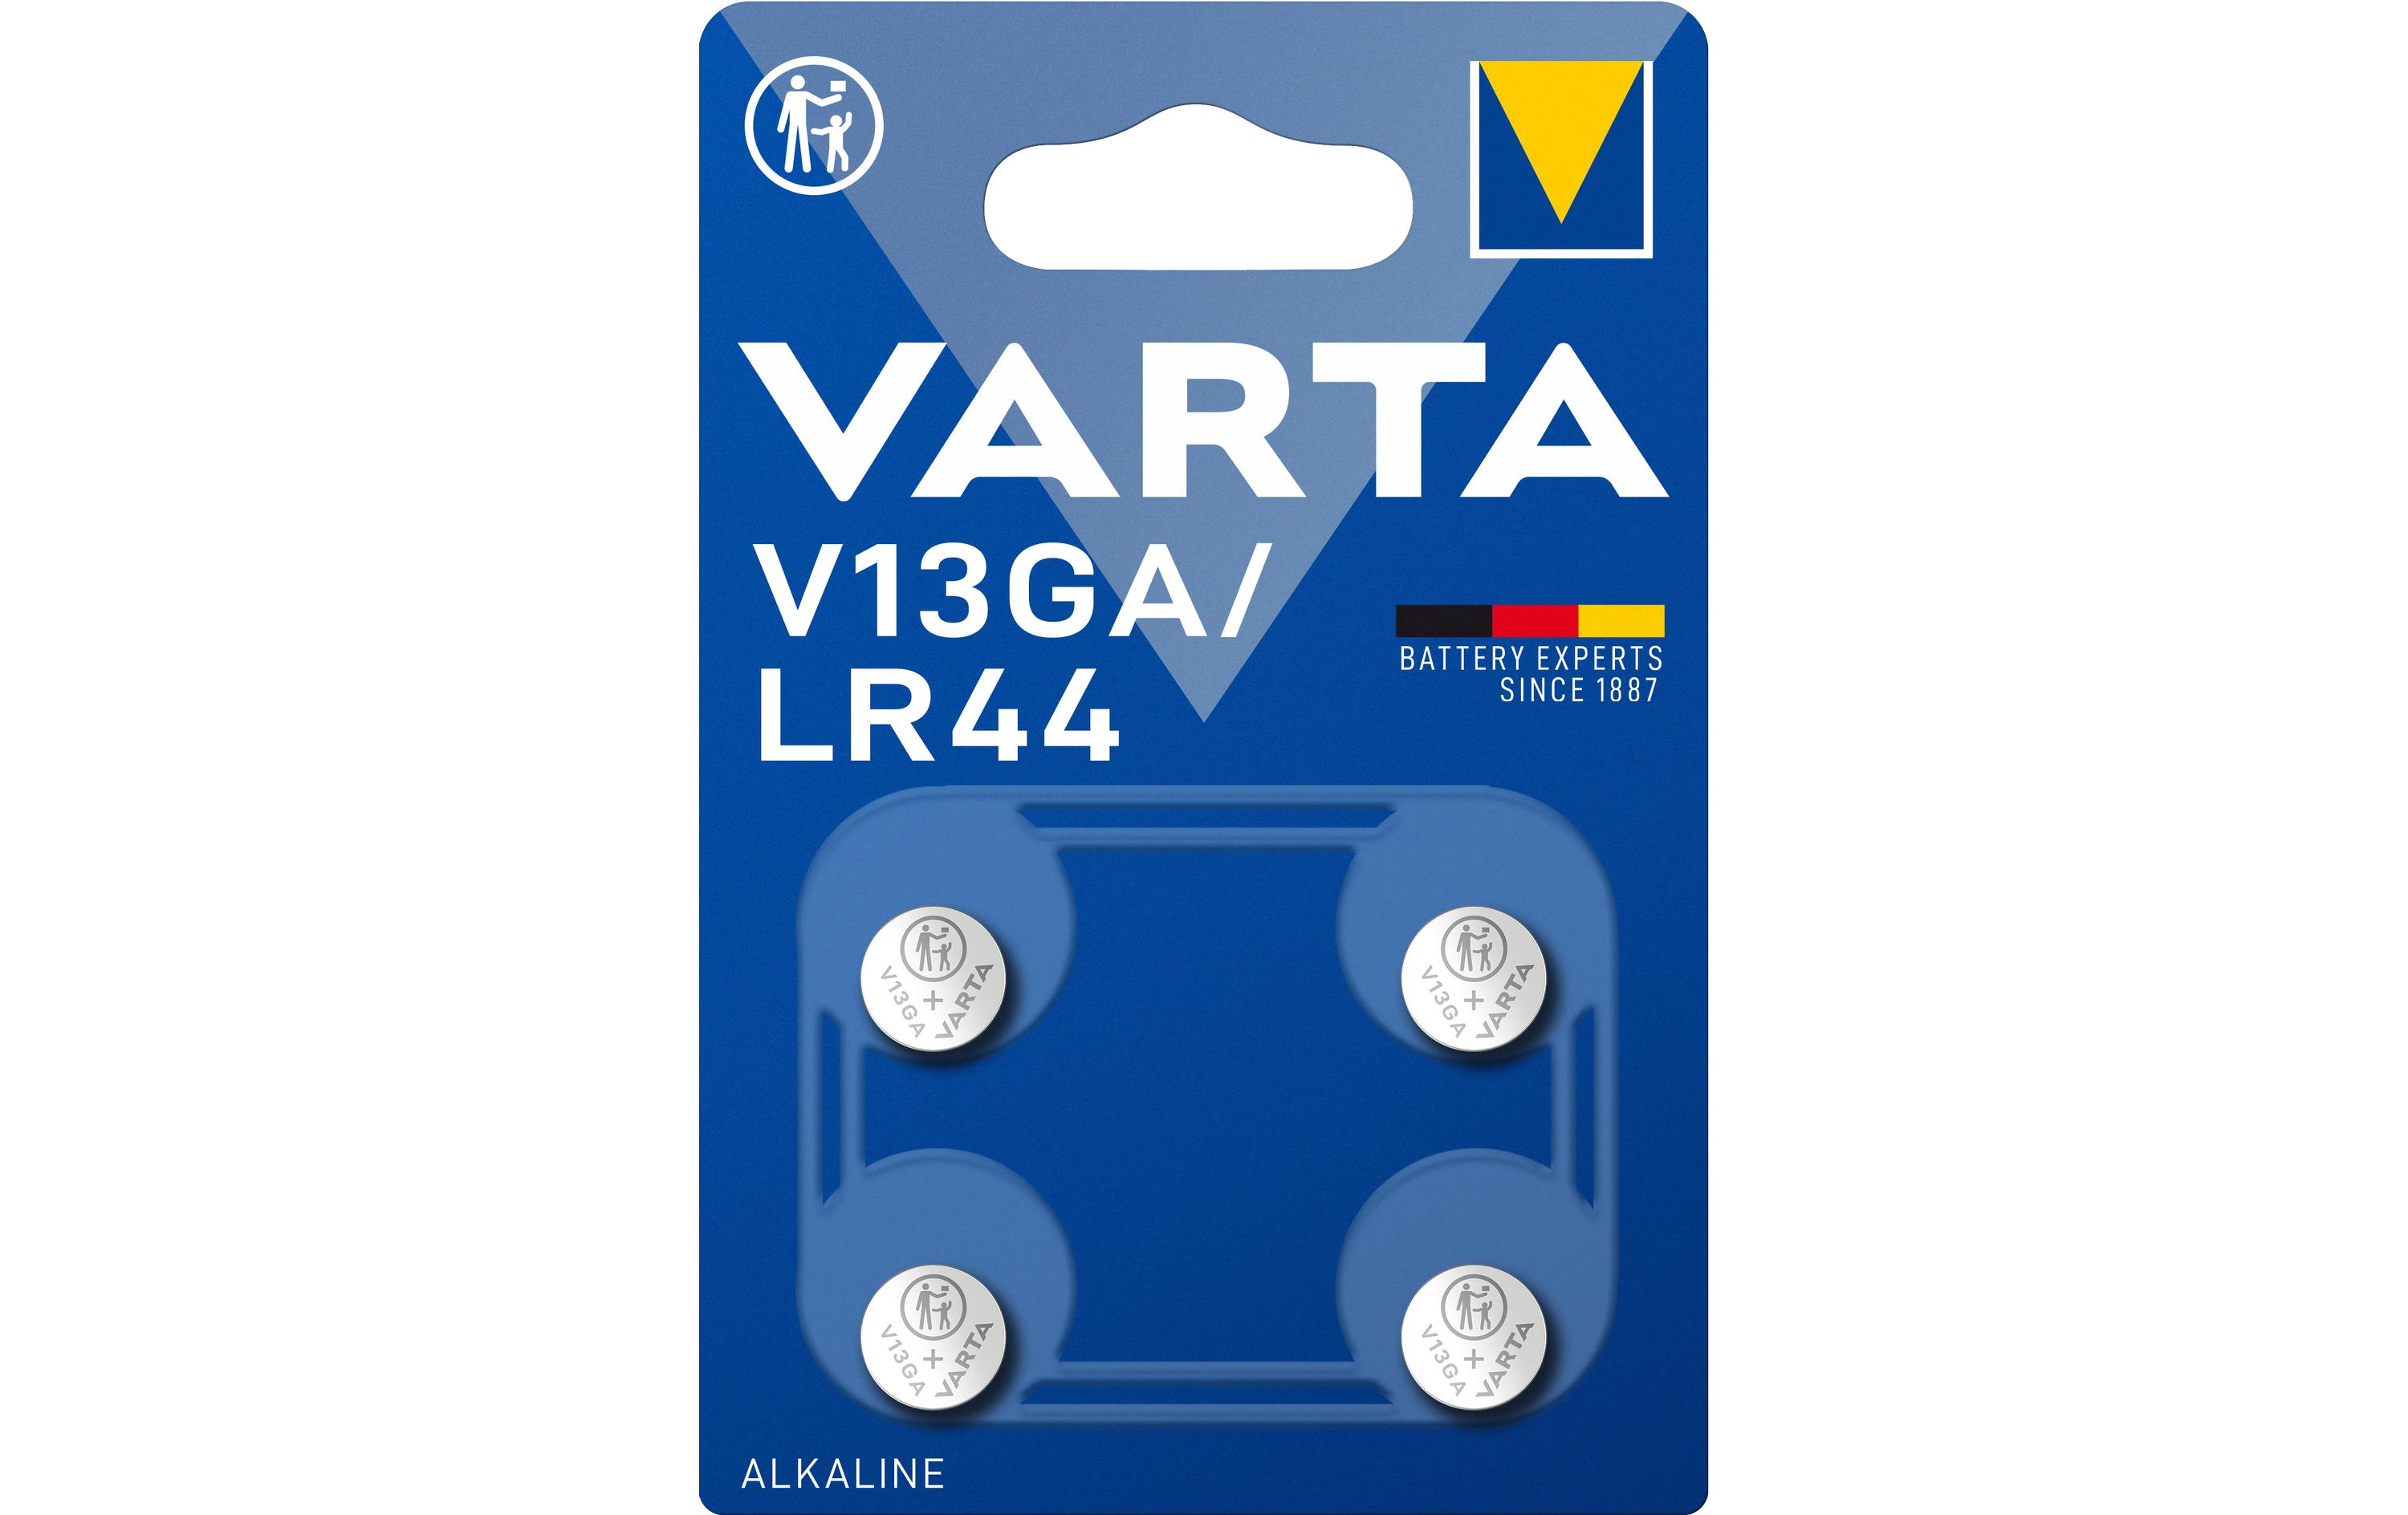 VARTA Knopfzelle V13GA, 1.5V, 4er Blister